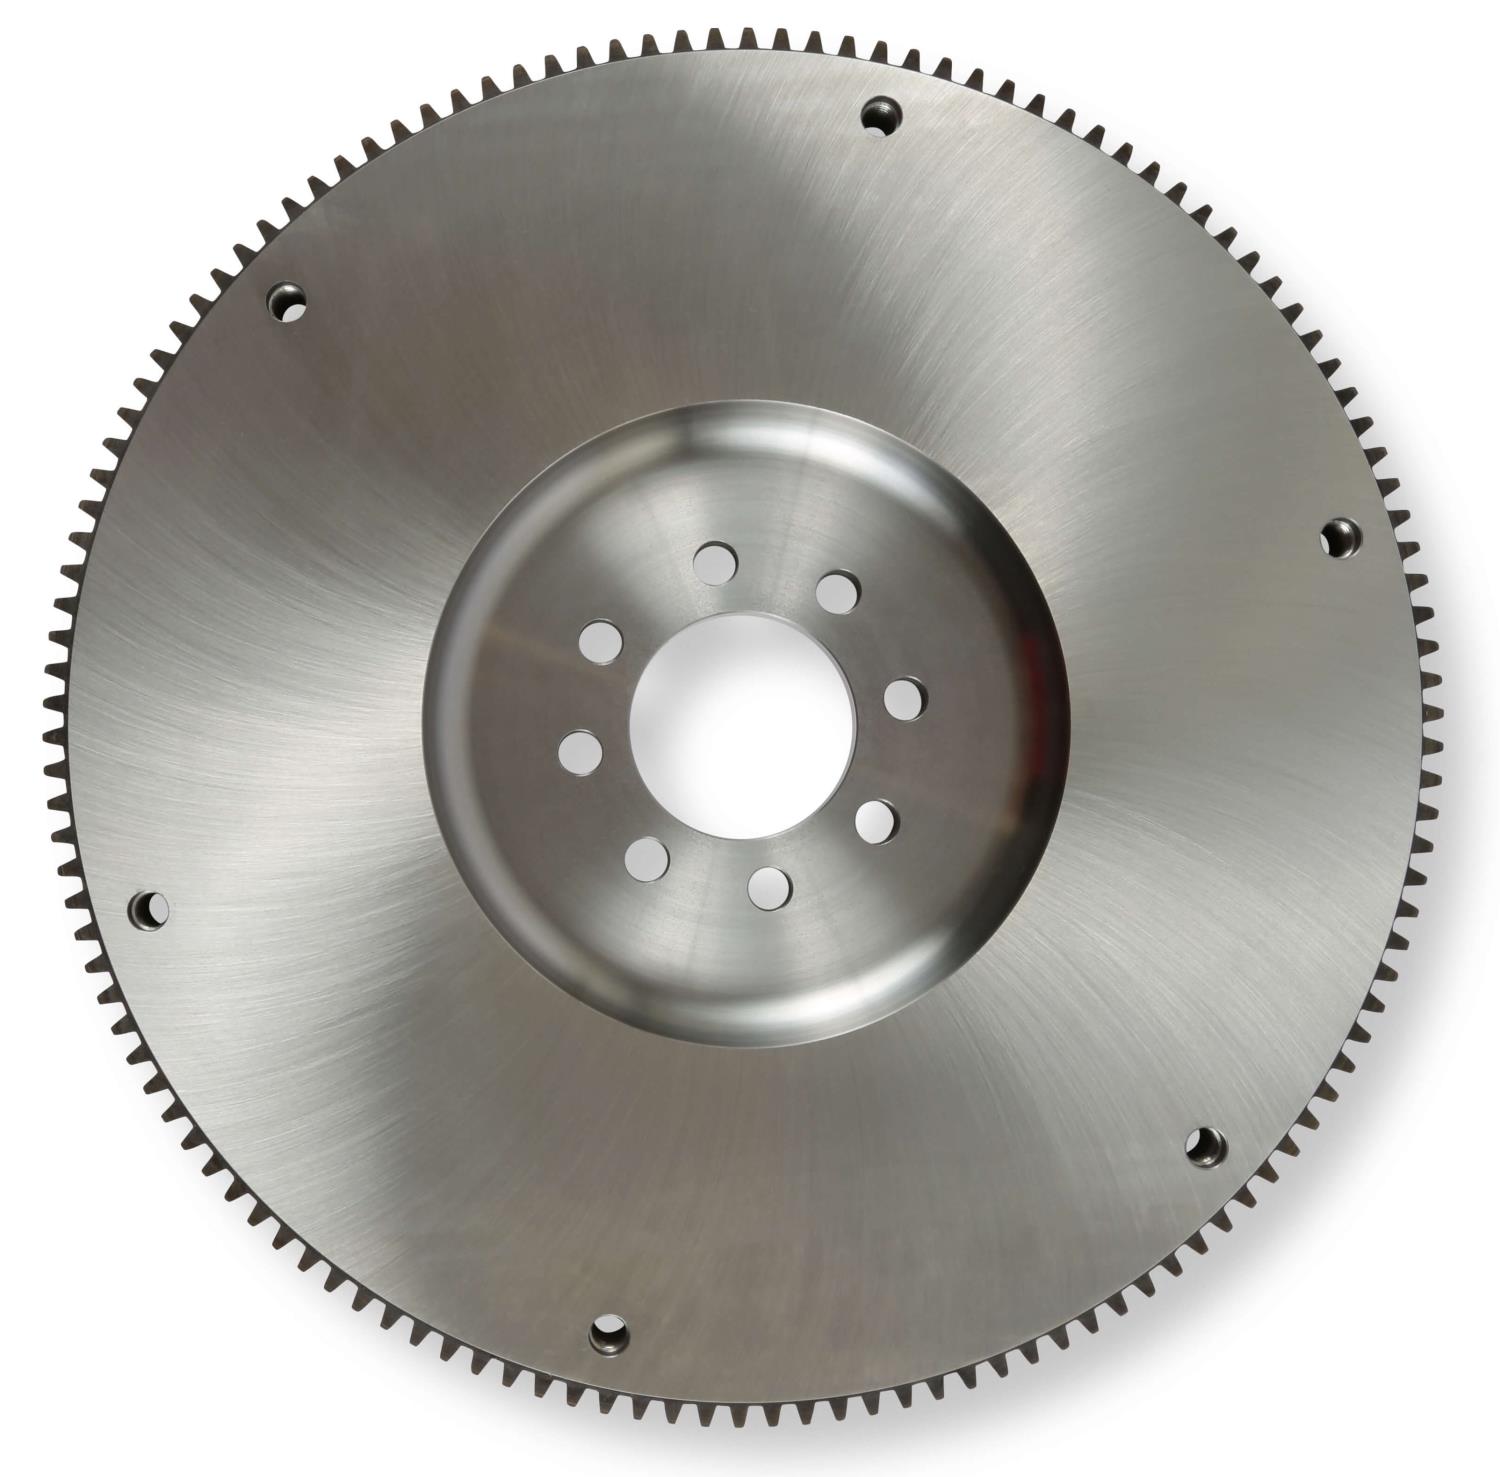 Billet Steel Flywheel Mopar Gen-III Hemi, For Early 4-Speed Transmissions, 130-Tooth, Internal Balance - SFI 1.1 Approved